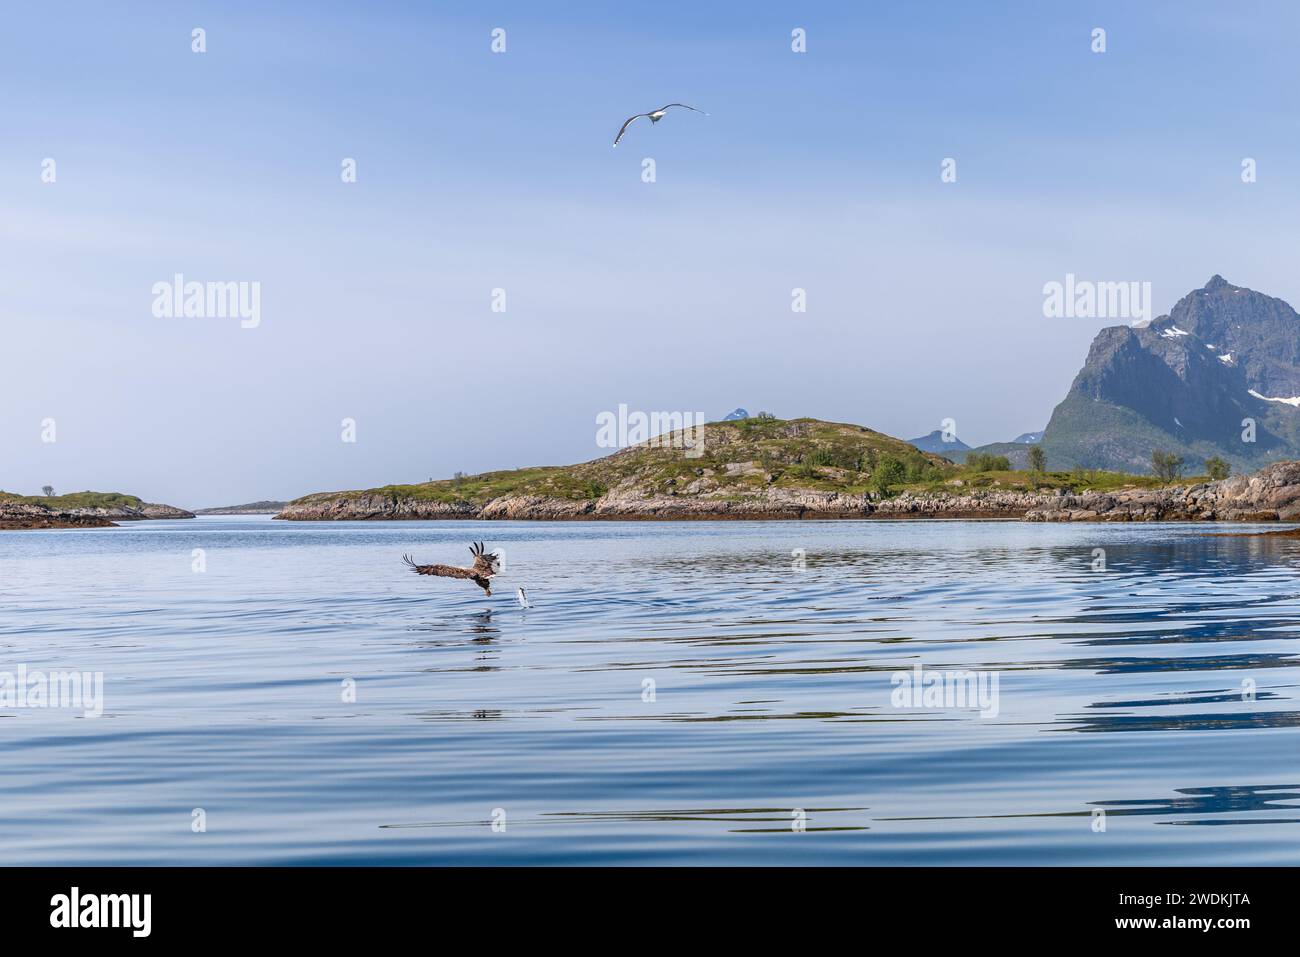 Un'aquila dalla coda bianca che caccia sulle acque riflettenti vicino agli affioramenti rocciosi di Lofoten, con un gabbiano che vola in lontananza Foto Stock